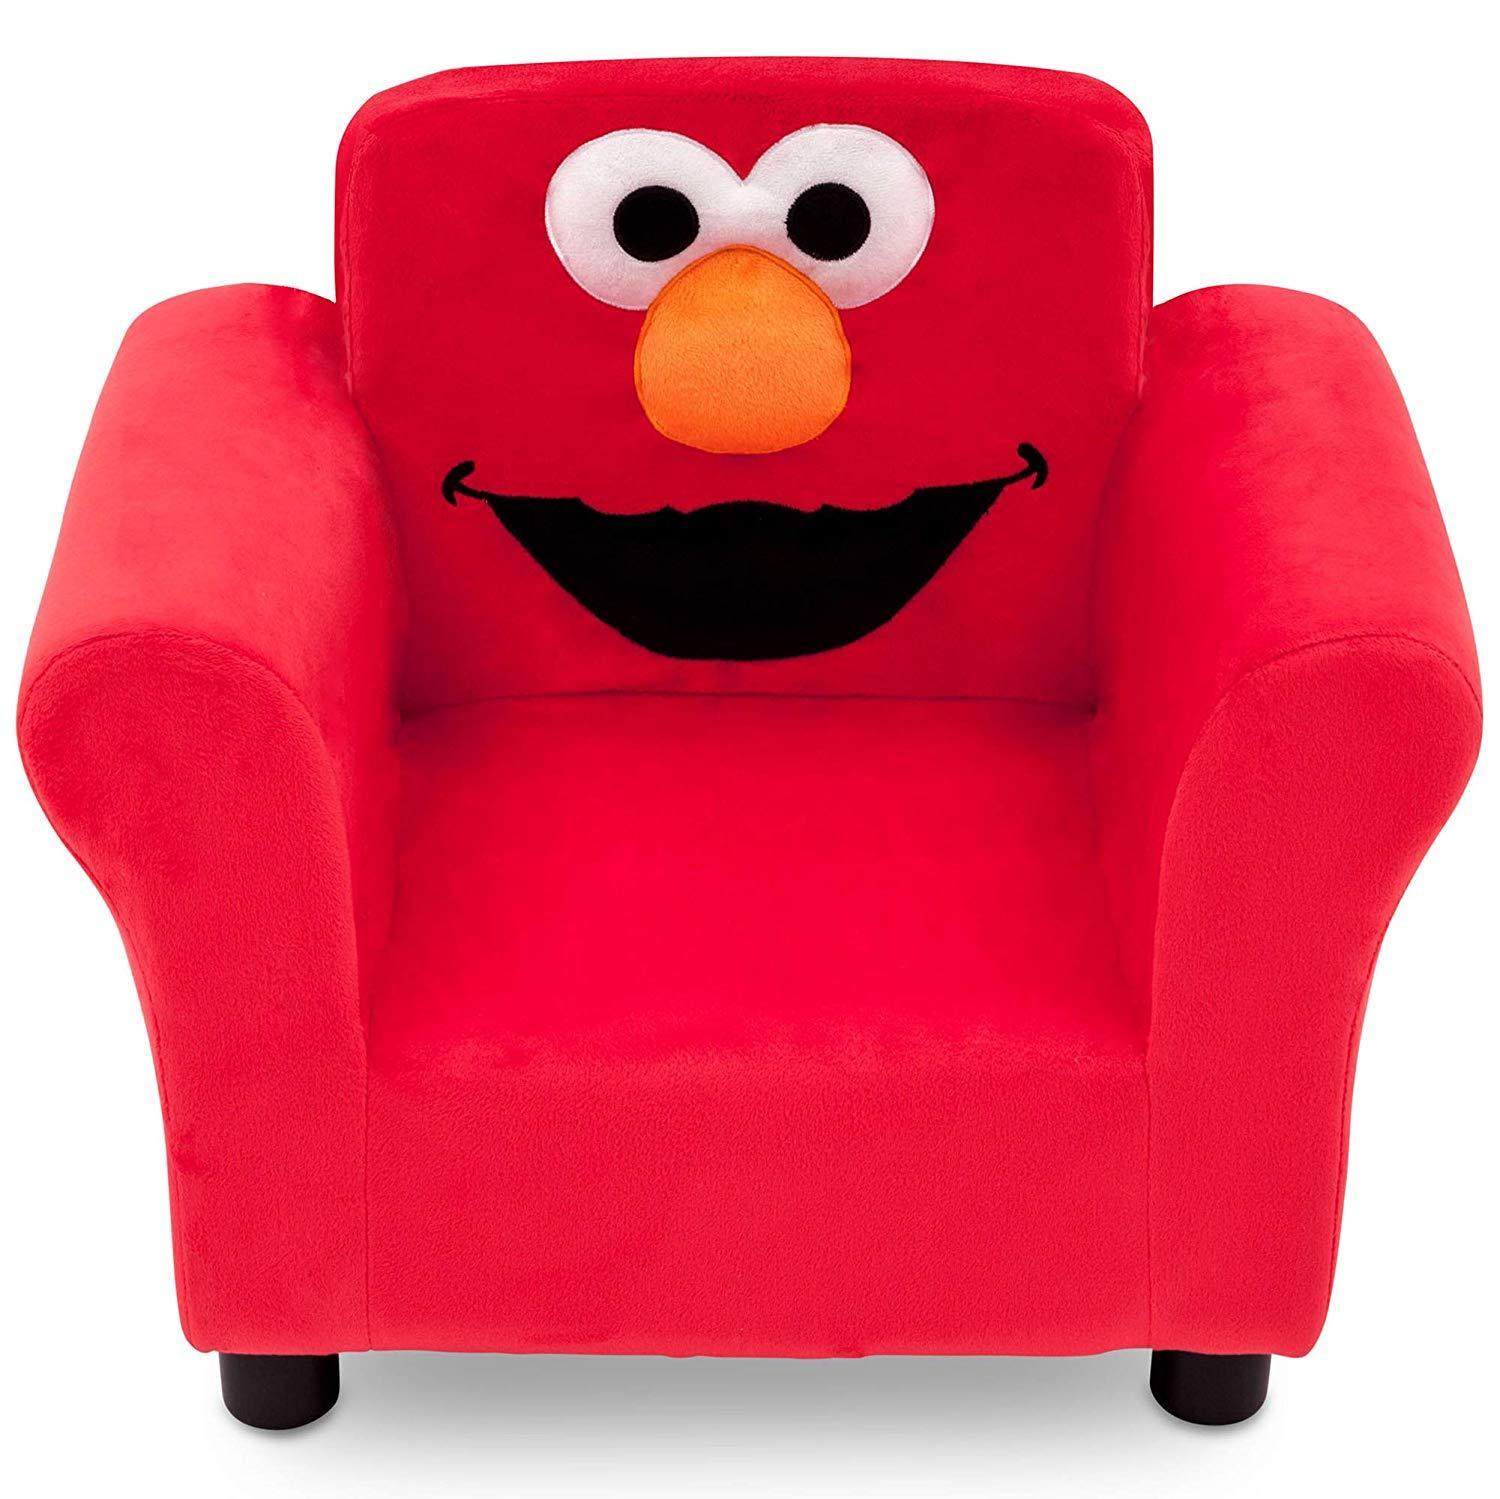 Sesame Street Elmo Upholstered Chair - Desks & Home Office Furniture